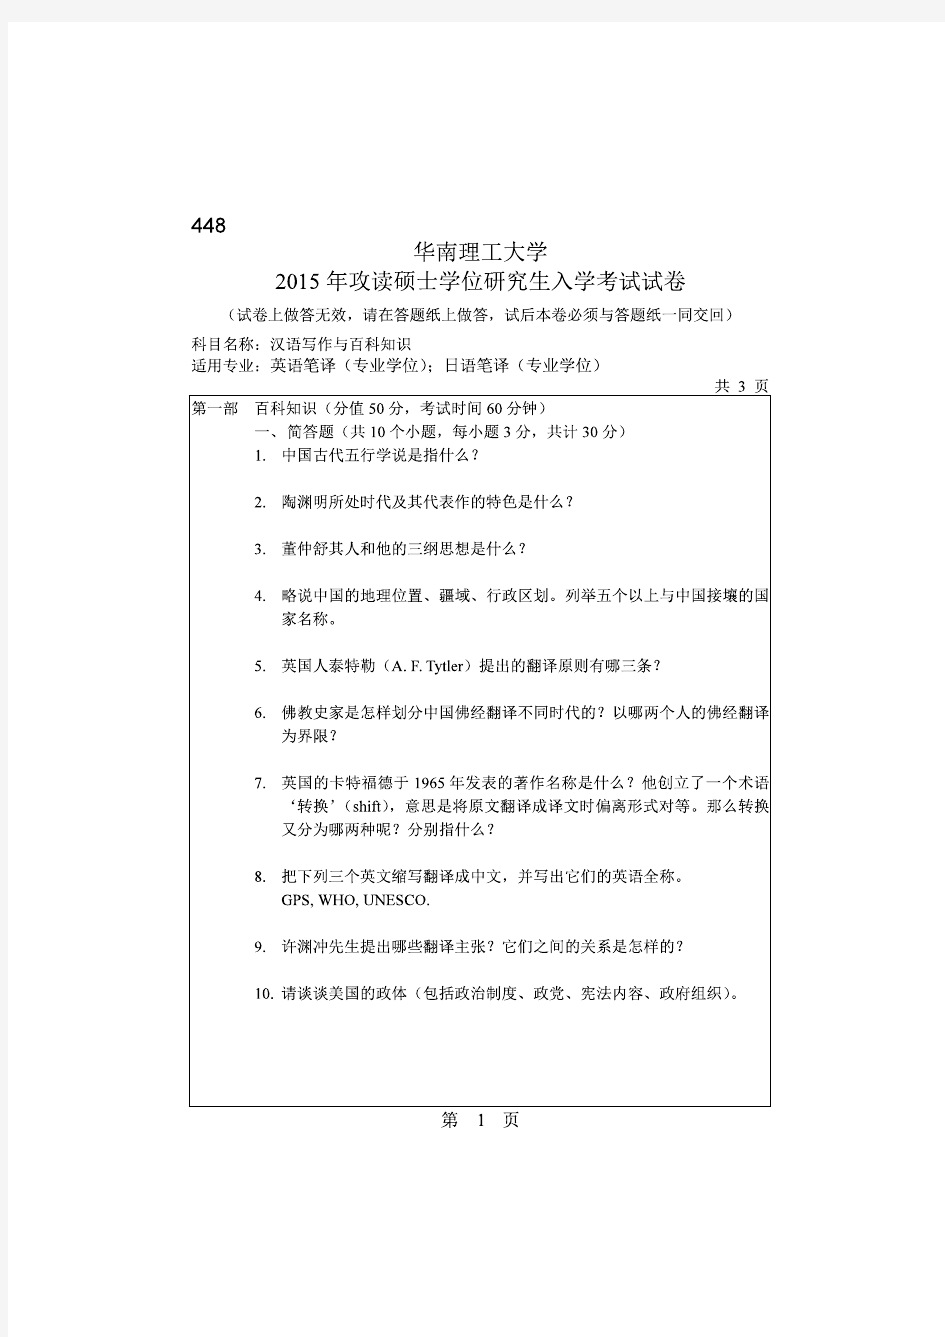 华南理工大学2015年《448汉语写作与百科知识》考研专业课真题试卷